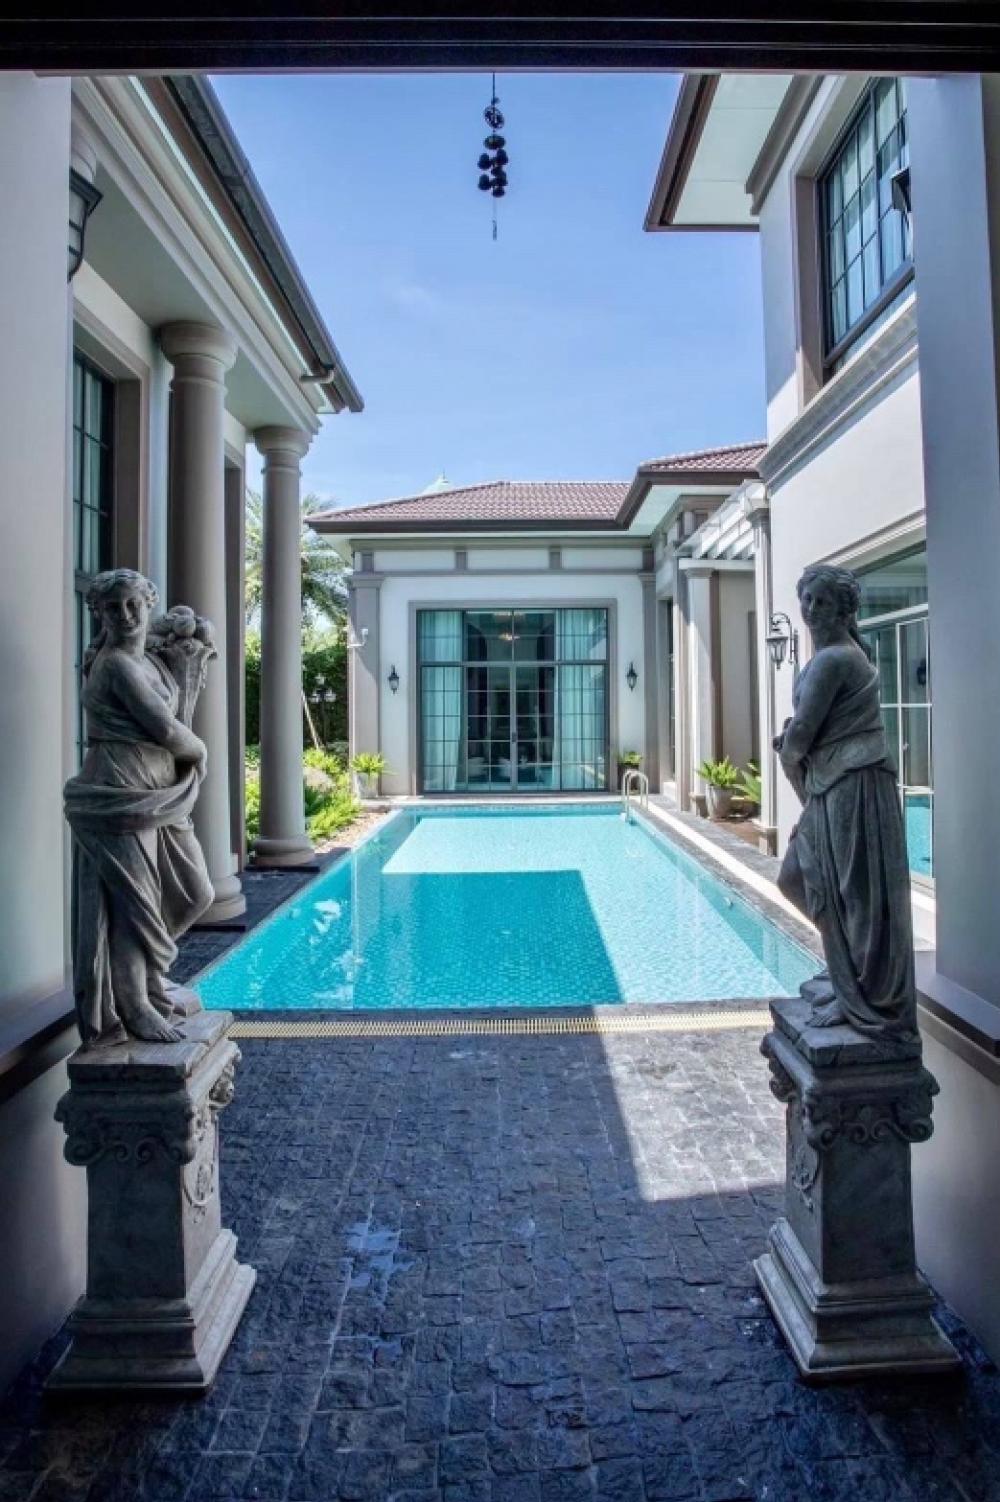 ขายบ้านพระราม 2 บางขุนเทียน : Selling : Ultra Luxury House with Private Pool , 5 Bed 6 Bath , 1 Living Room , 1 Working Space , 2 Maid Room , 5 Parking Lot 🔥🔥 Selling Price : 95,000,000 THB 🔥🔥#superluxuryhousebkk#Ultraluxurycondo #luxuryhousebangkok #superluxurycondoforsale #อสังหาริม